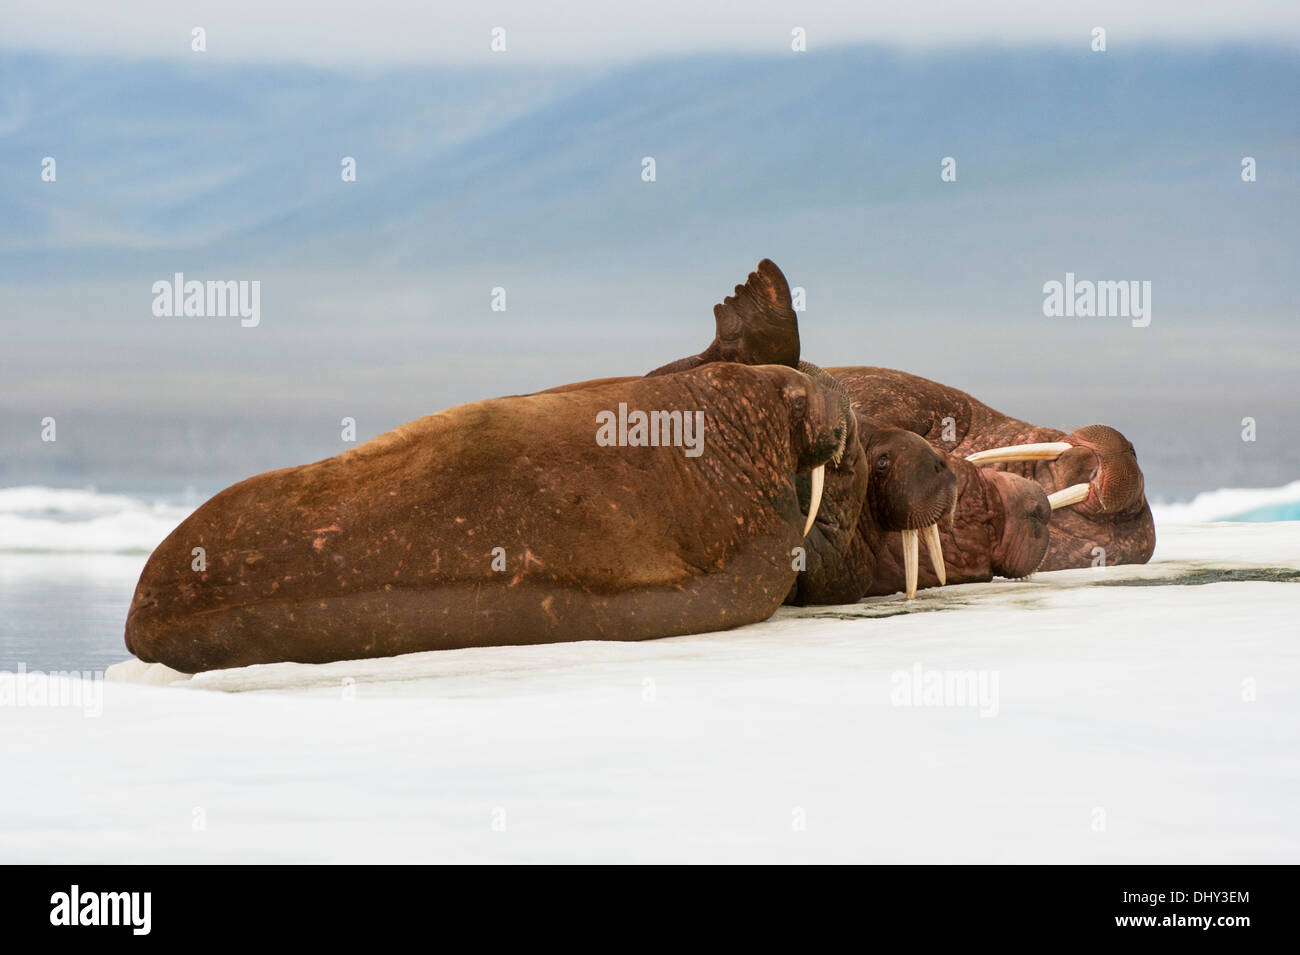 Le morse (Odobenus rosmarus), l'île Wrangel, Chuckchi Mer, Tchoukotka, Extrême-Orient russe Banque D'Images